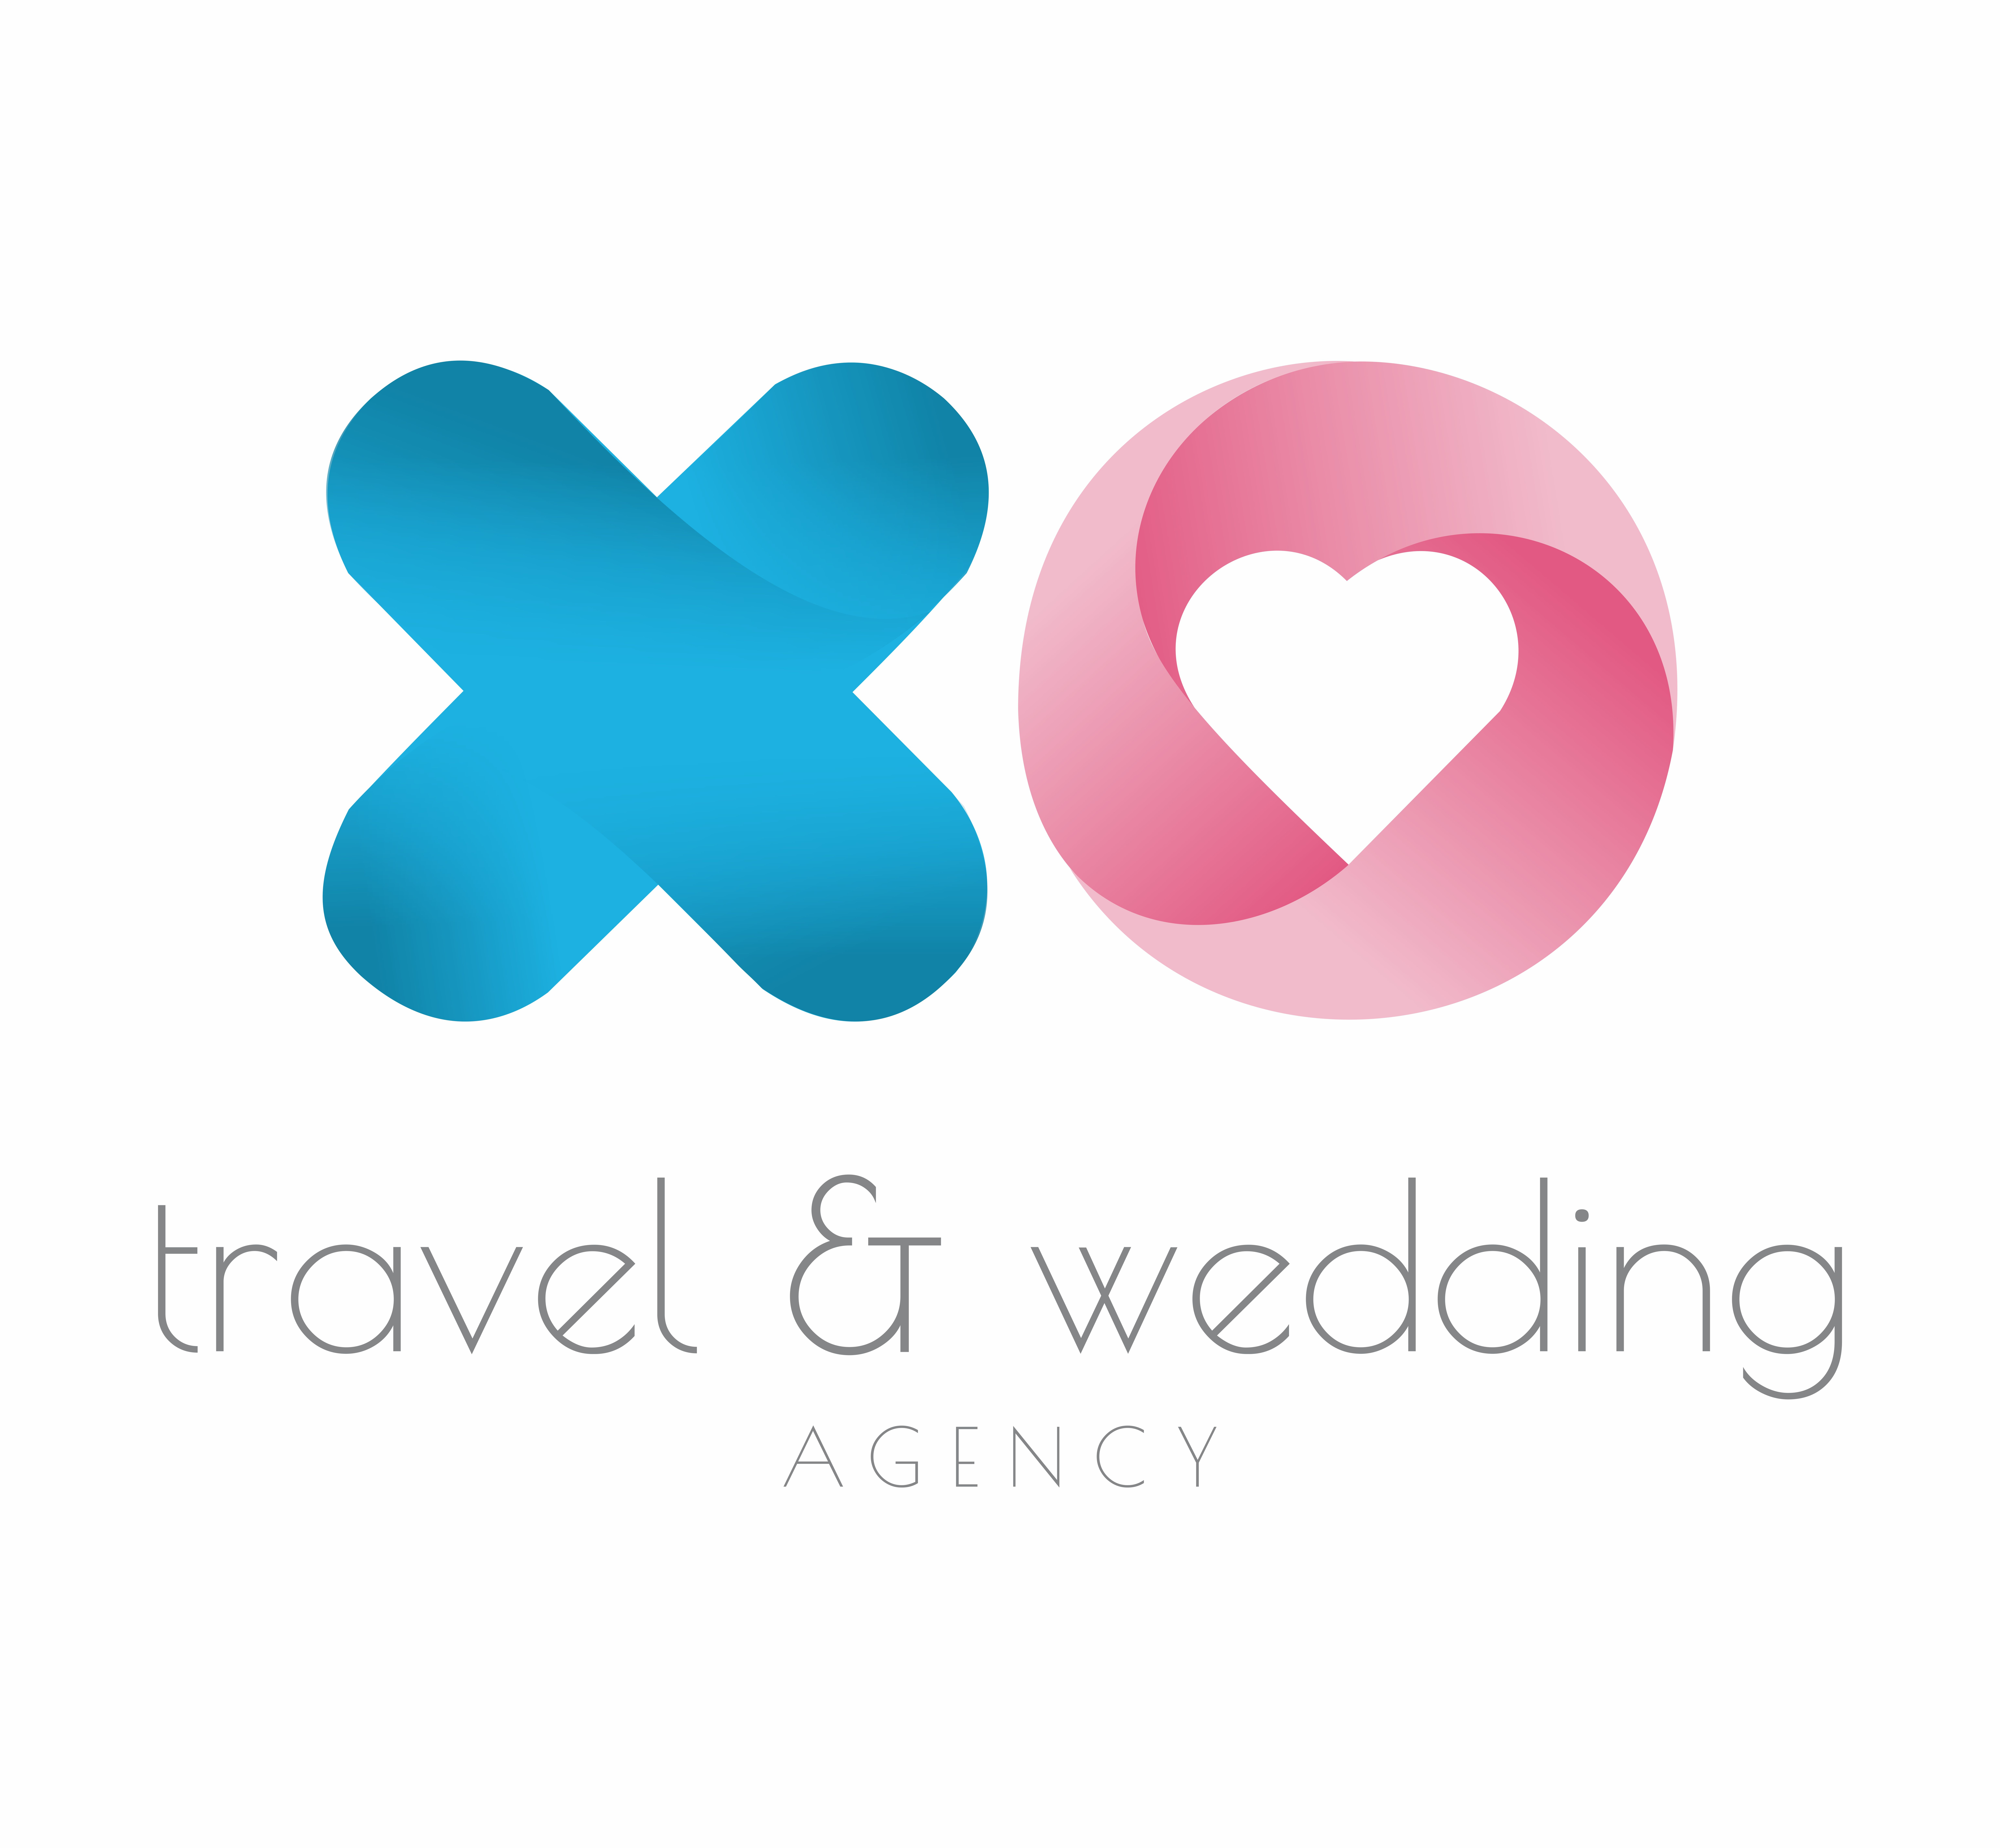 Xo Travel and Wedding